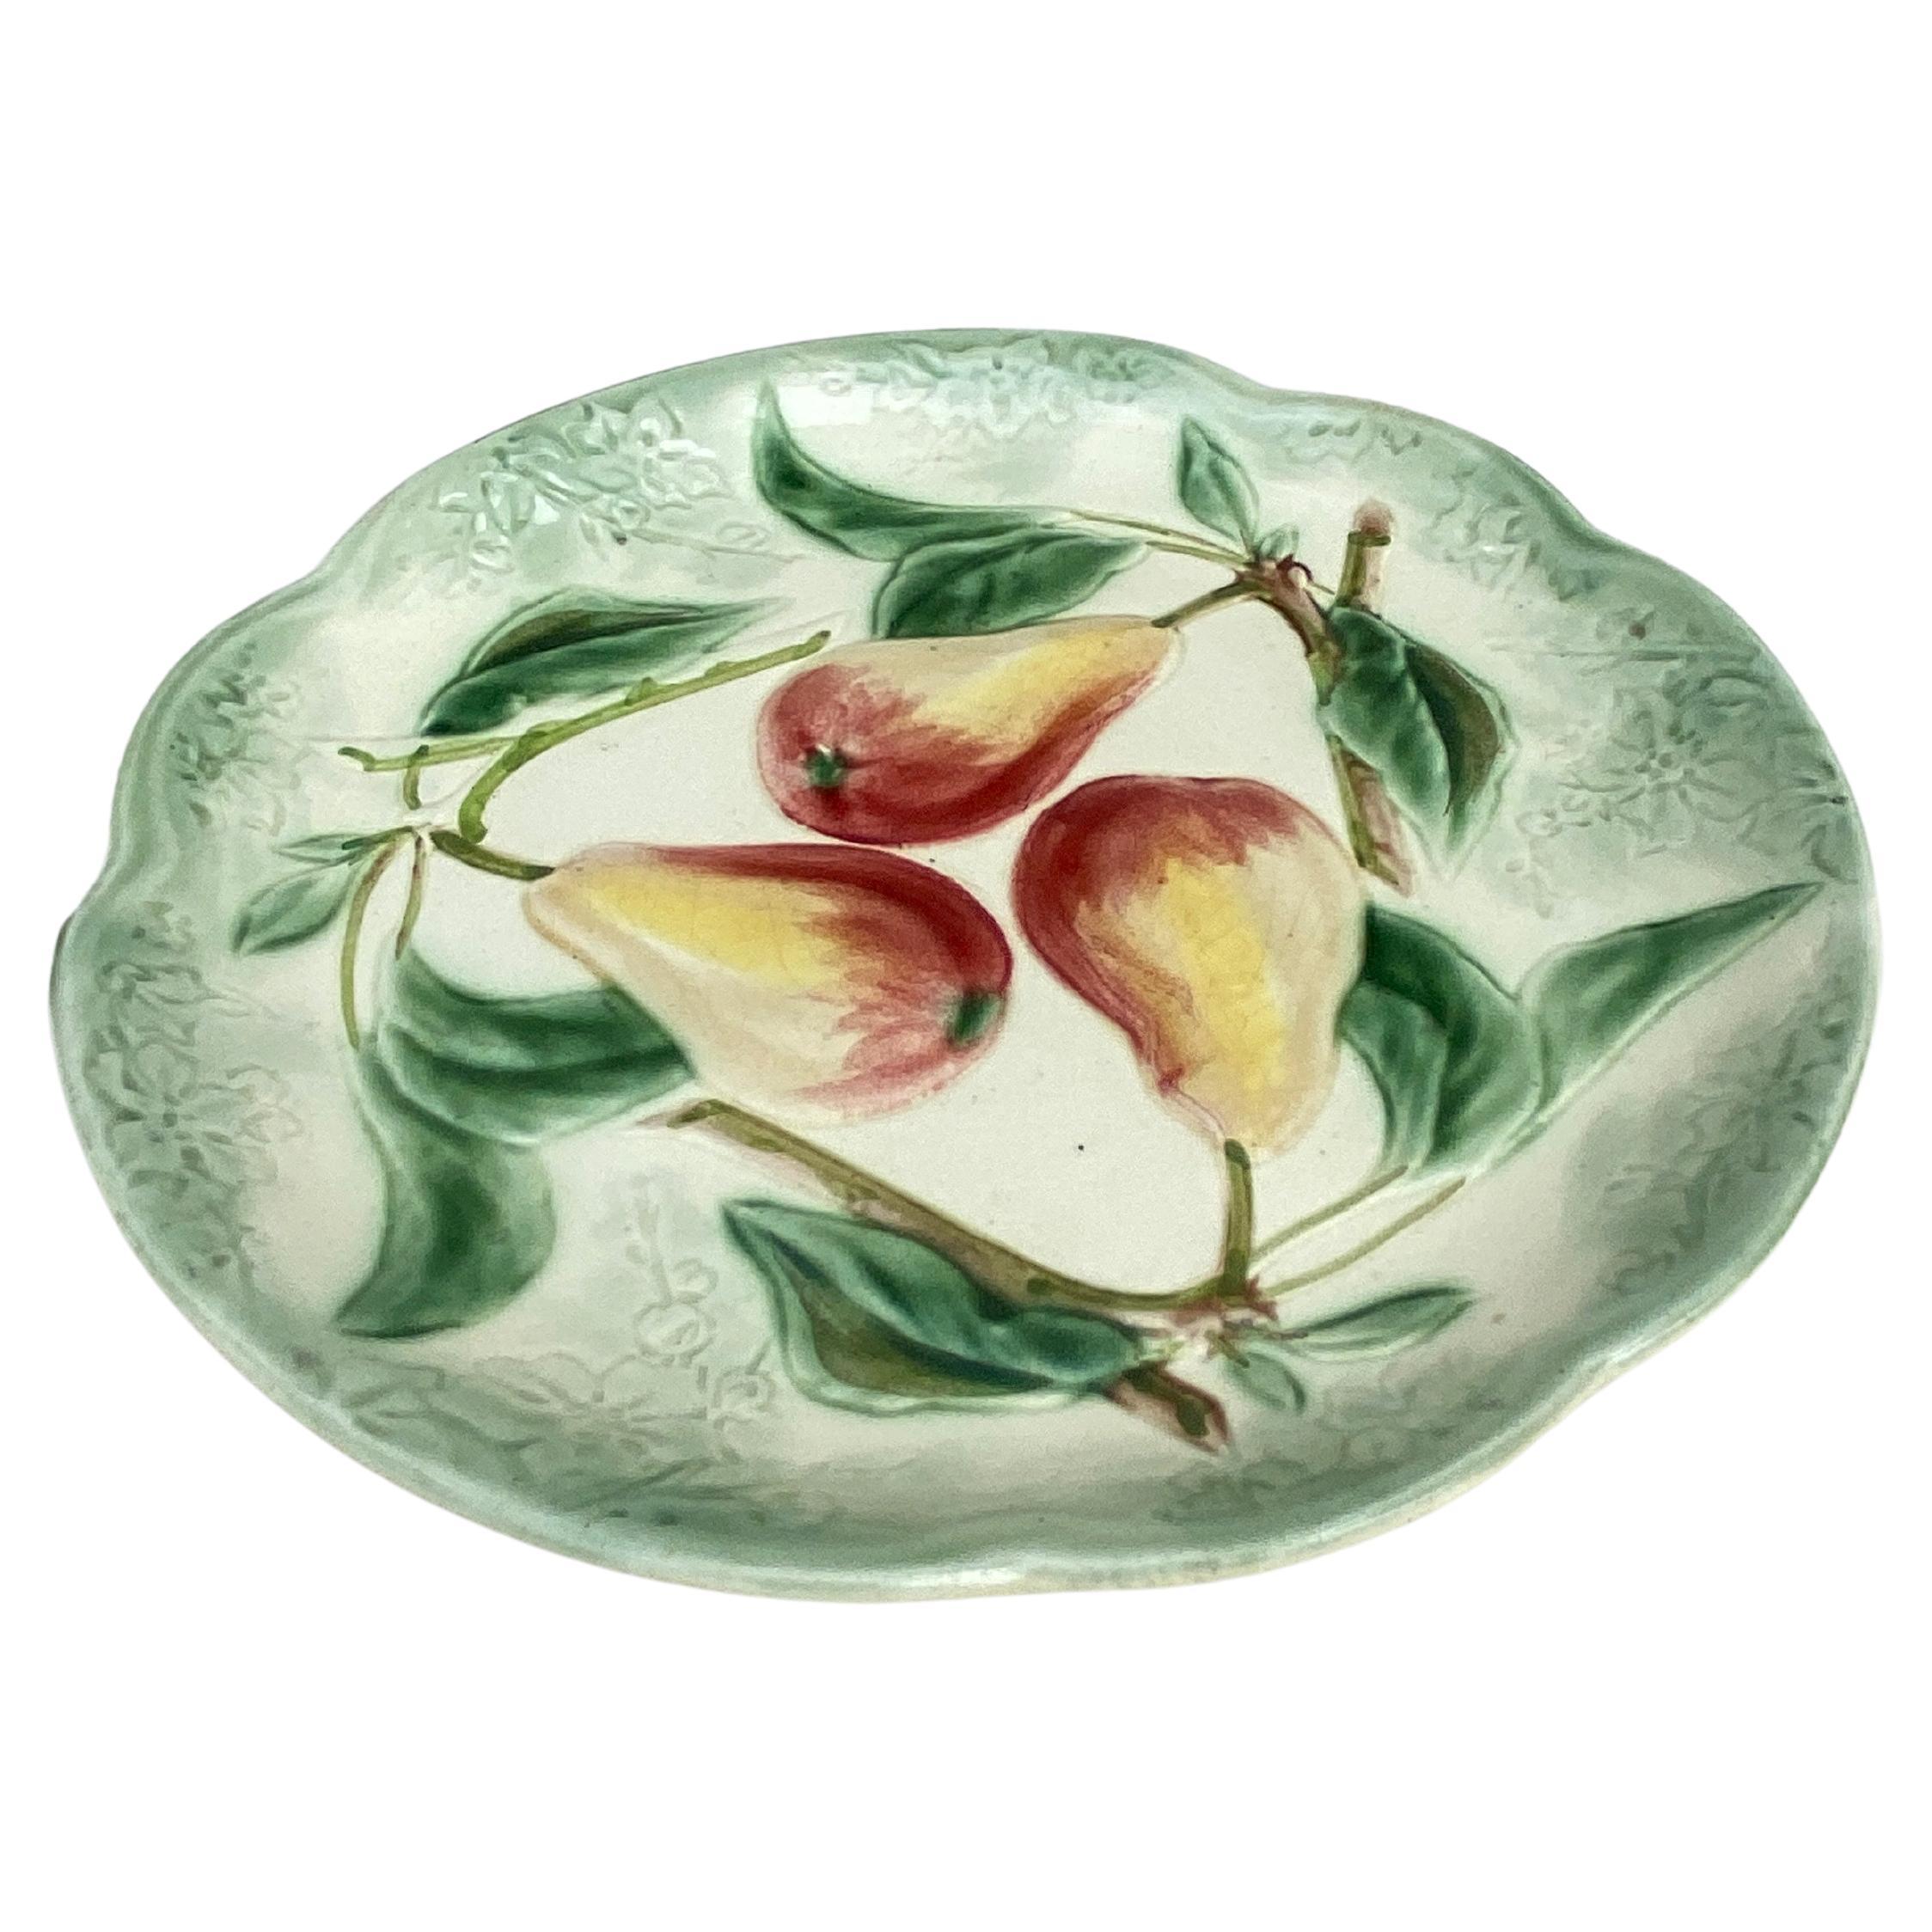 Majolika-Birnen-Teller des 19. Jahrhunderts, signiert Choisy-le-Roi.
Hergestellt für Higgins & Seiter New York.
Die Higgins & Seiter Company aus New York City begann 1887 mit dem Verkauf von Tischdekorationen, darunter auch reich geschliffenes Glas.